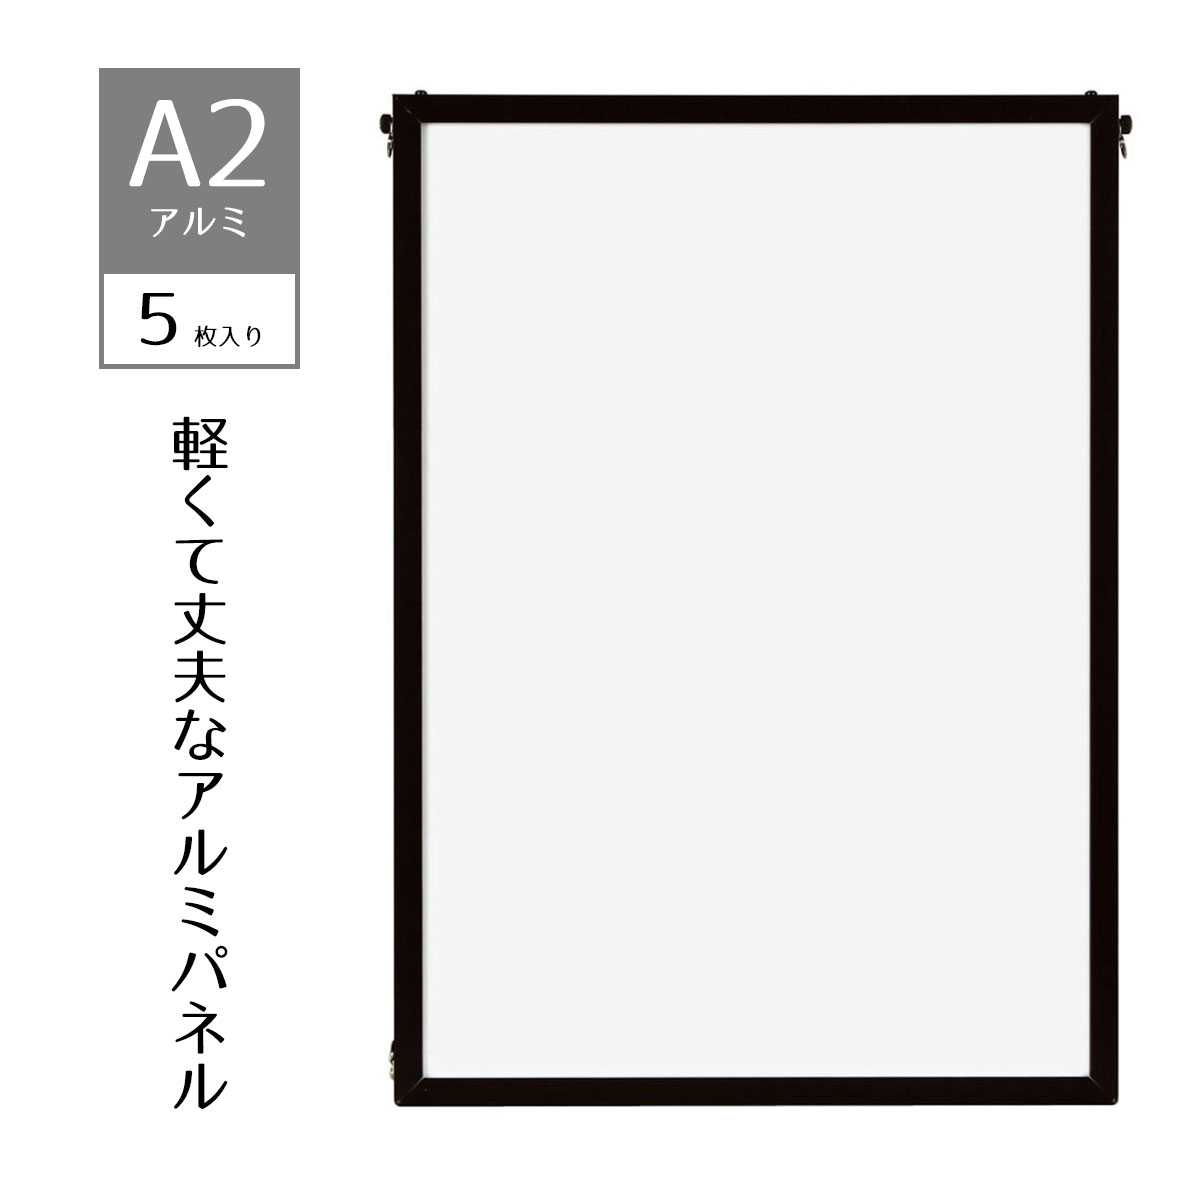 【5枚入り】ベストアルミパネル 黒 A2ポスター・写真・ポップなど幅広く利用できる、軽くて丈夫なアル ...